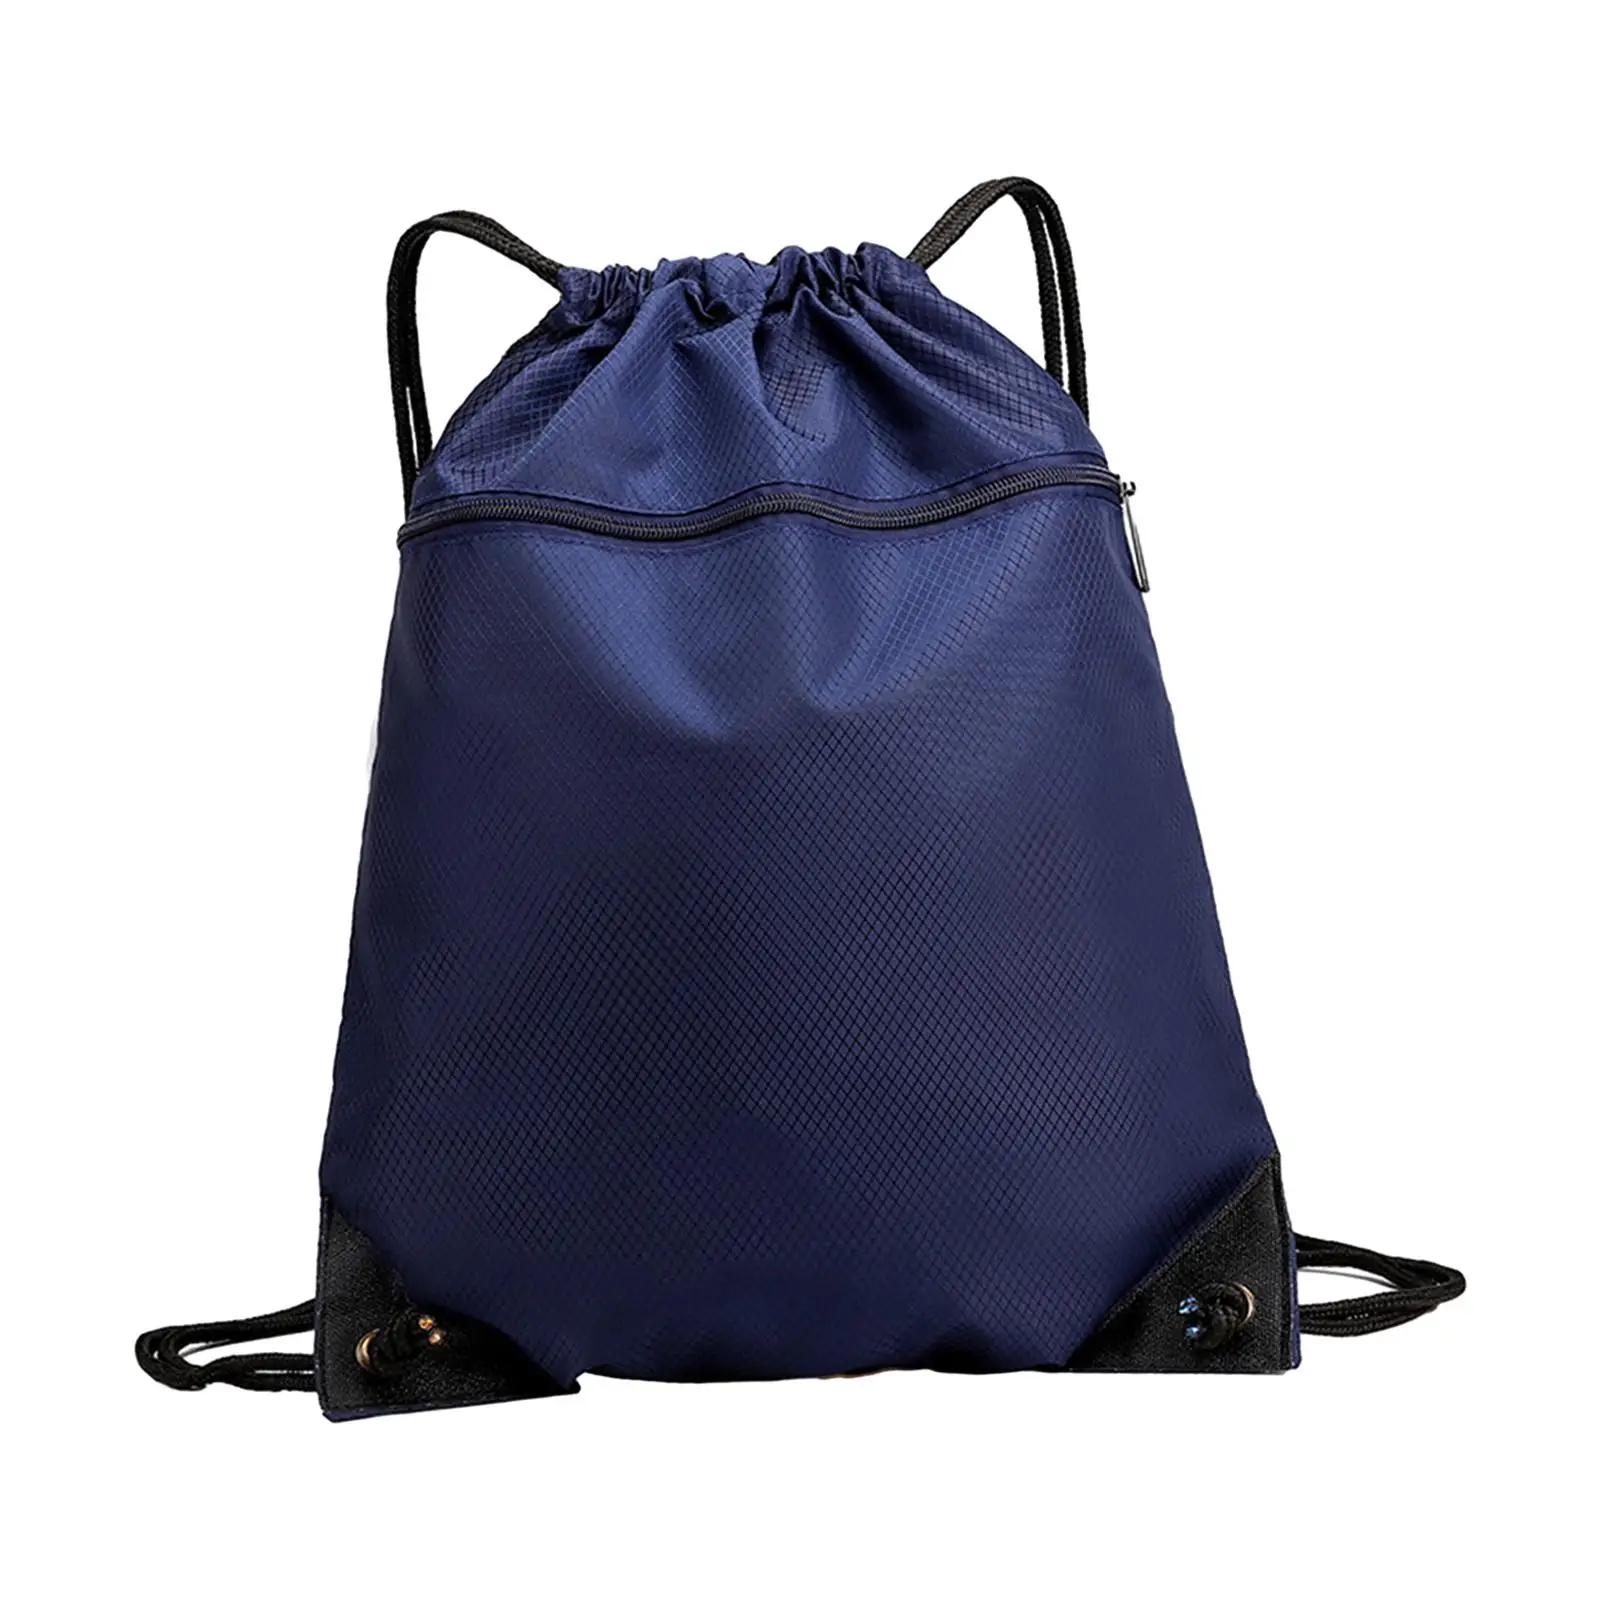 Drawstring Backpack Gym Bag Casual Daypack Tear Resistant Lightweight Basketball Shoulder Bag for Men Women Backpacking Beach